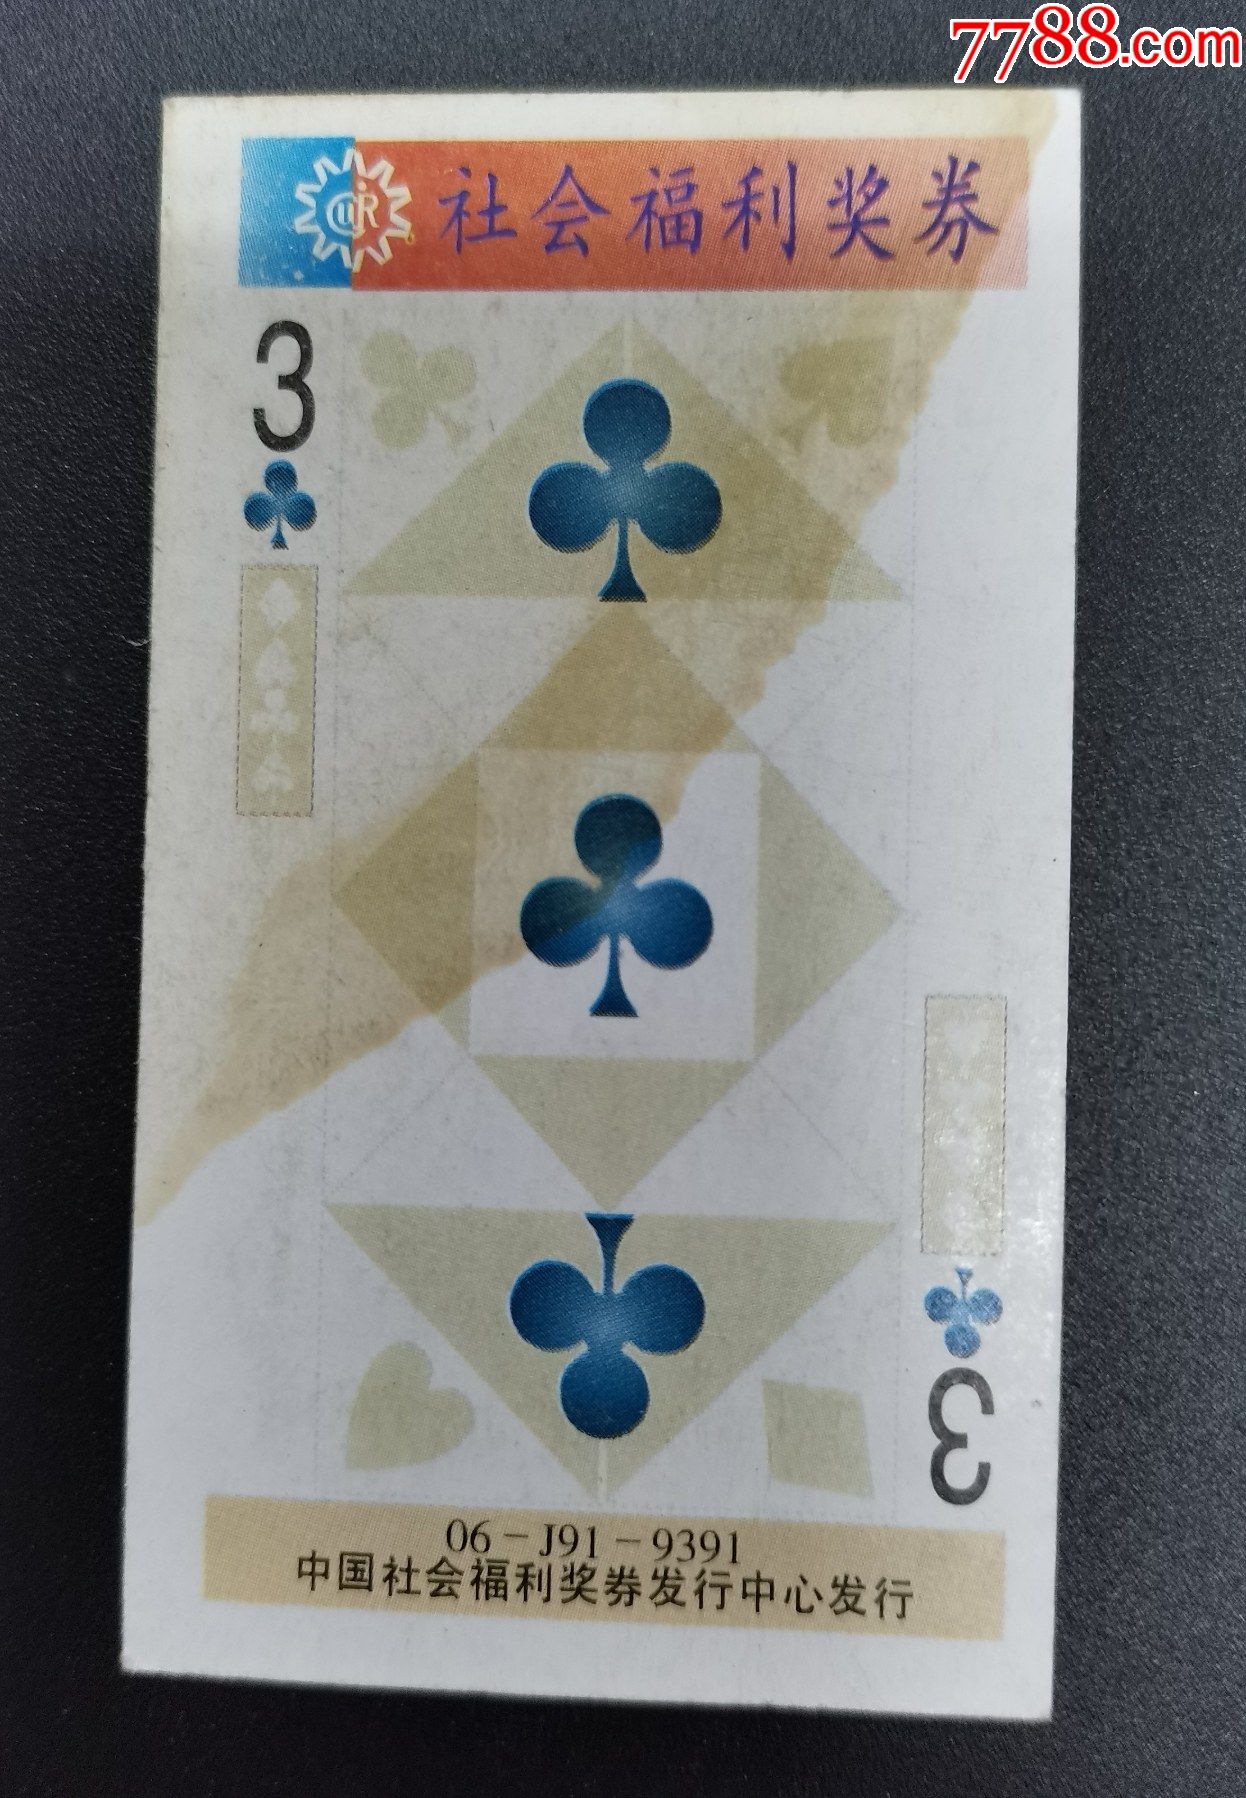 扑克牌梅花3图片图片